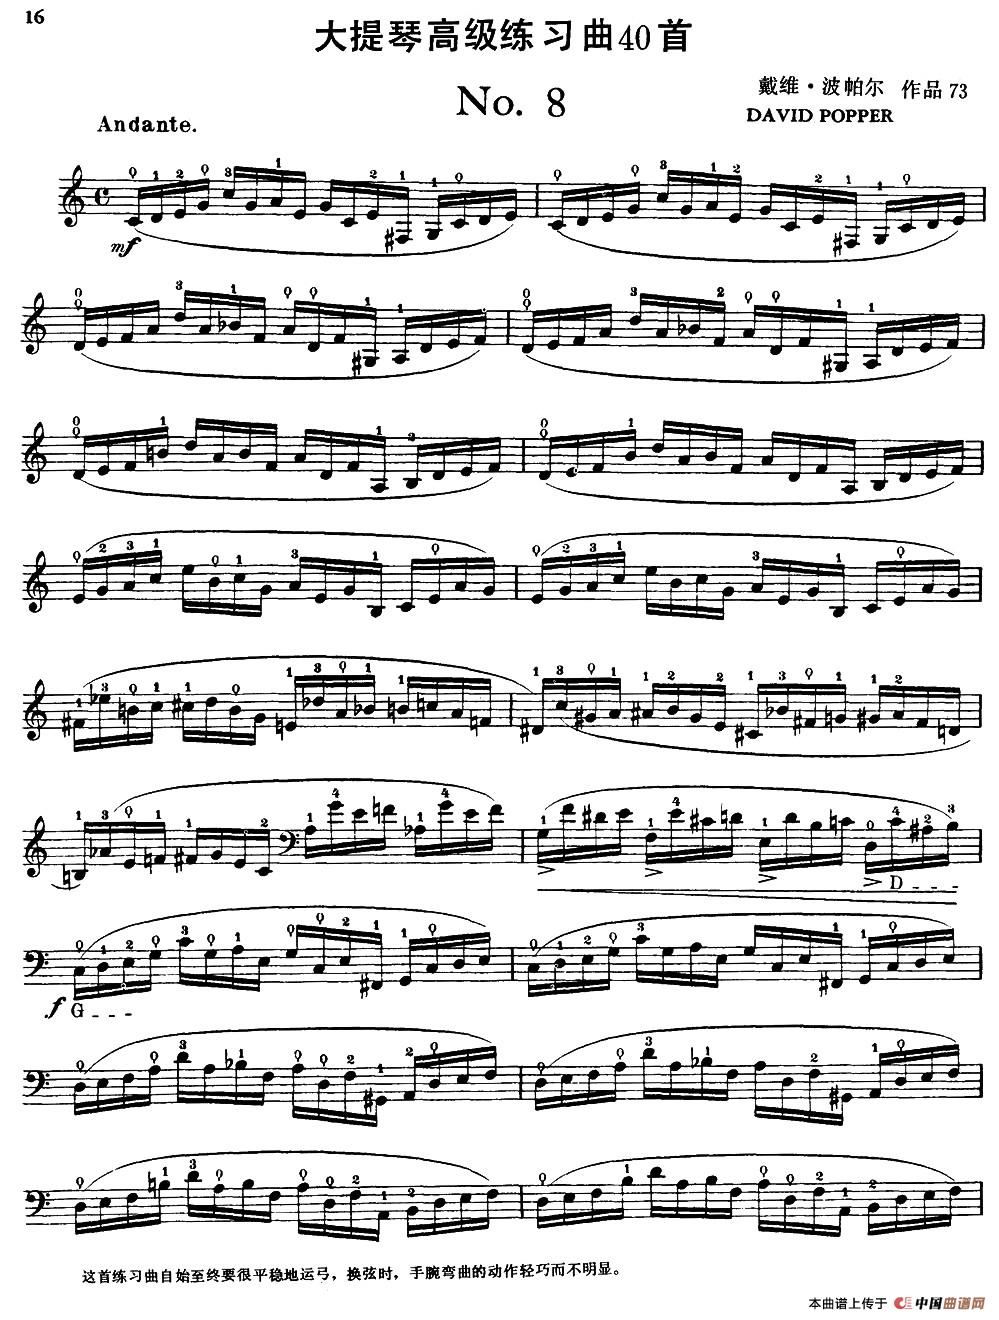 曲谱大提琴_一剪梅大提琴曲谱(3)